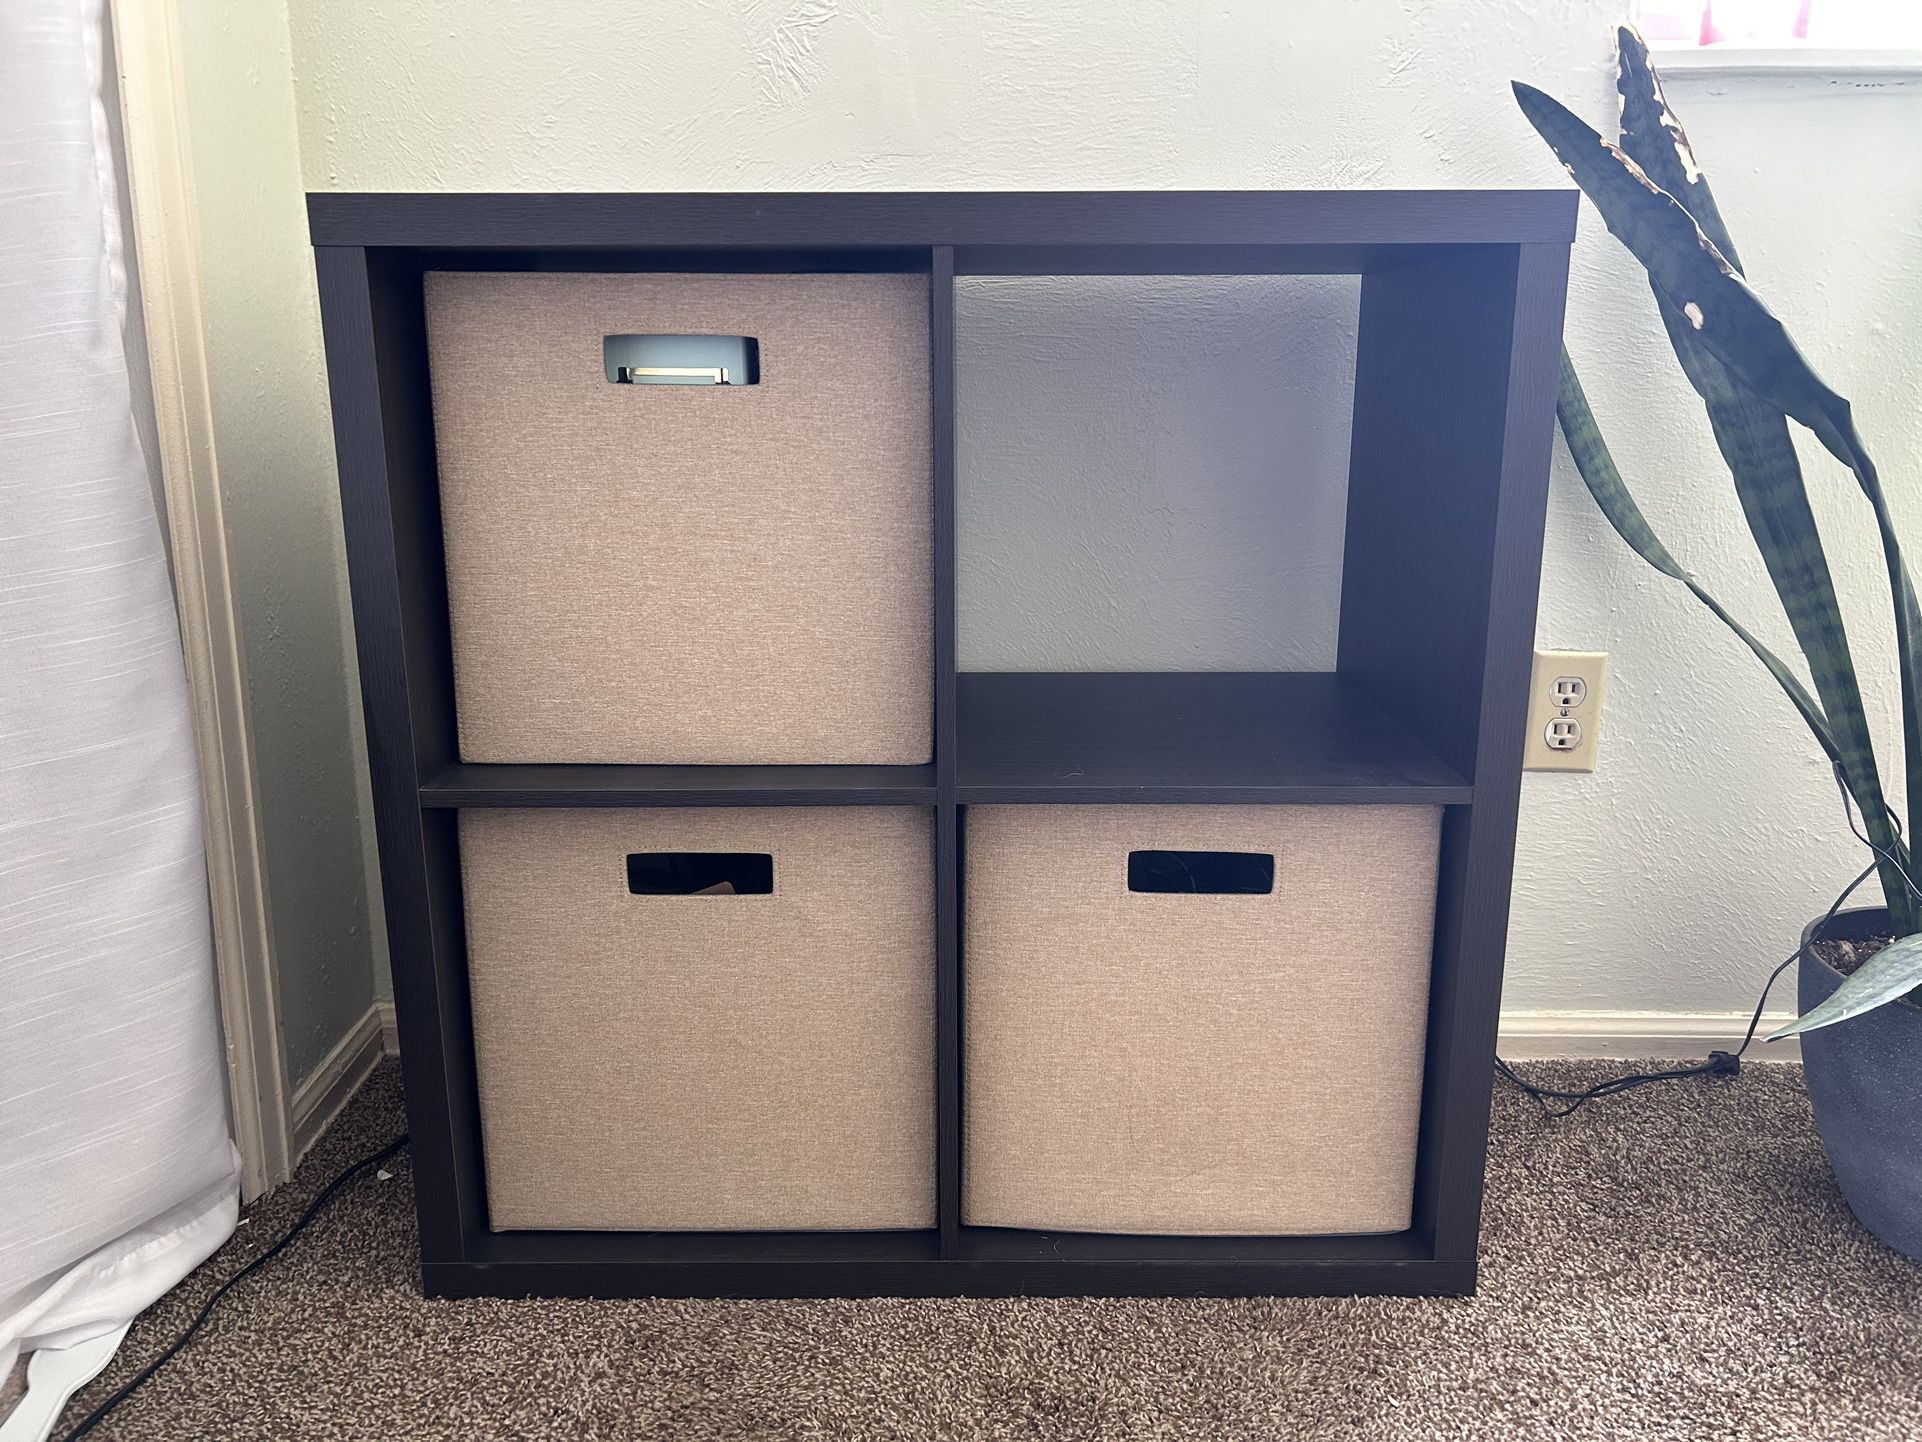 4-Cube Storage Shelf with Bins